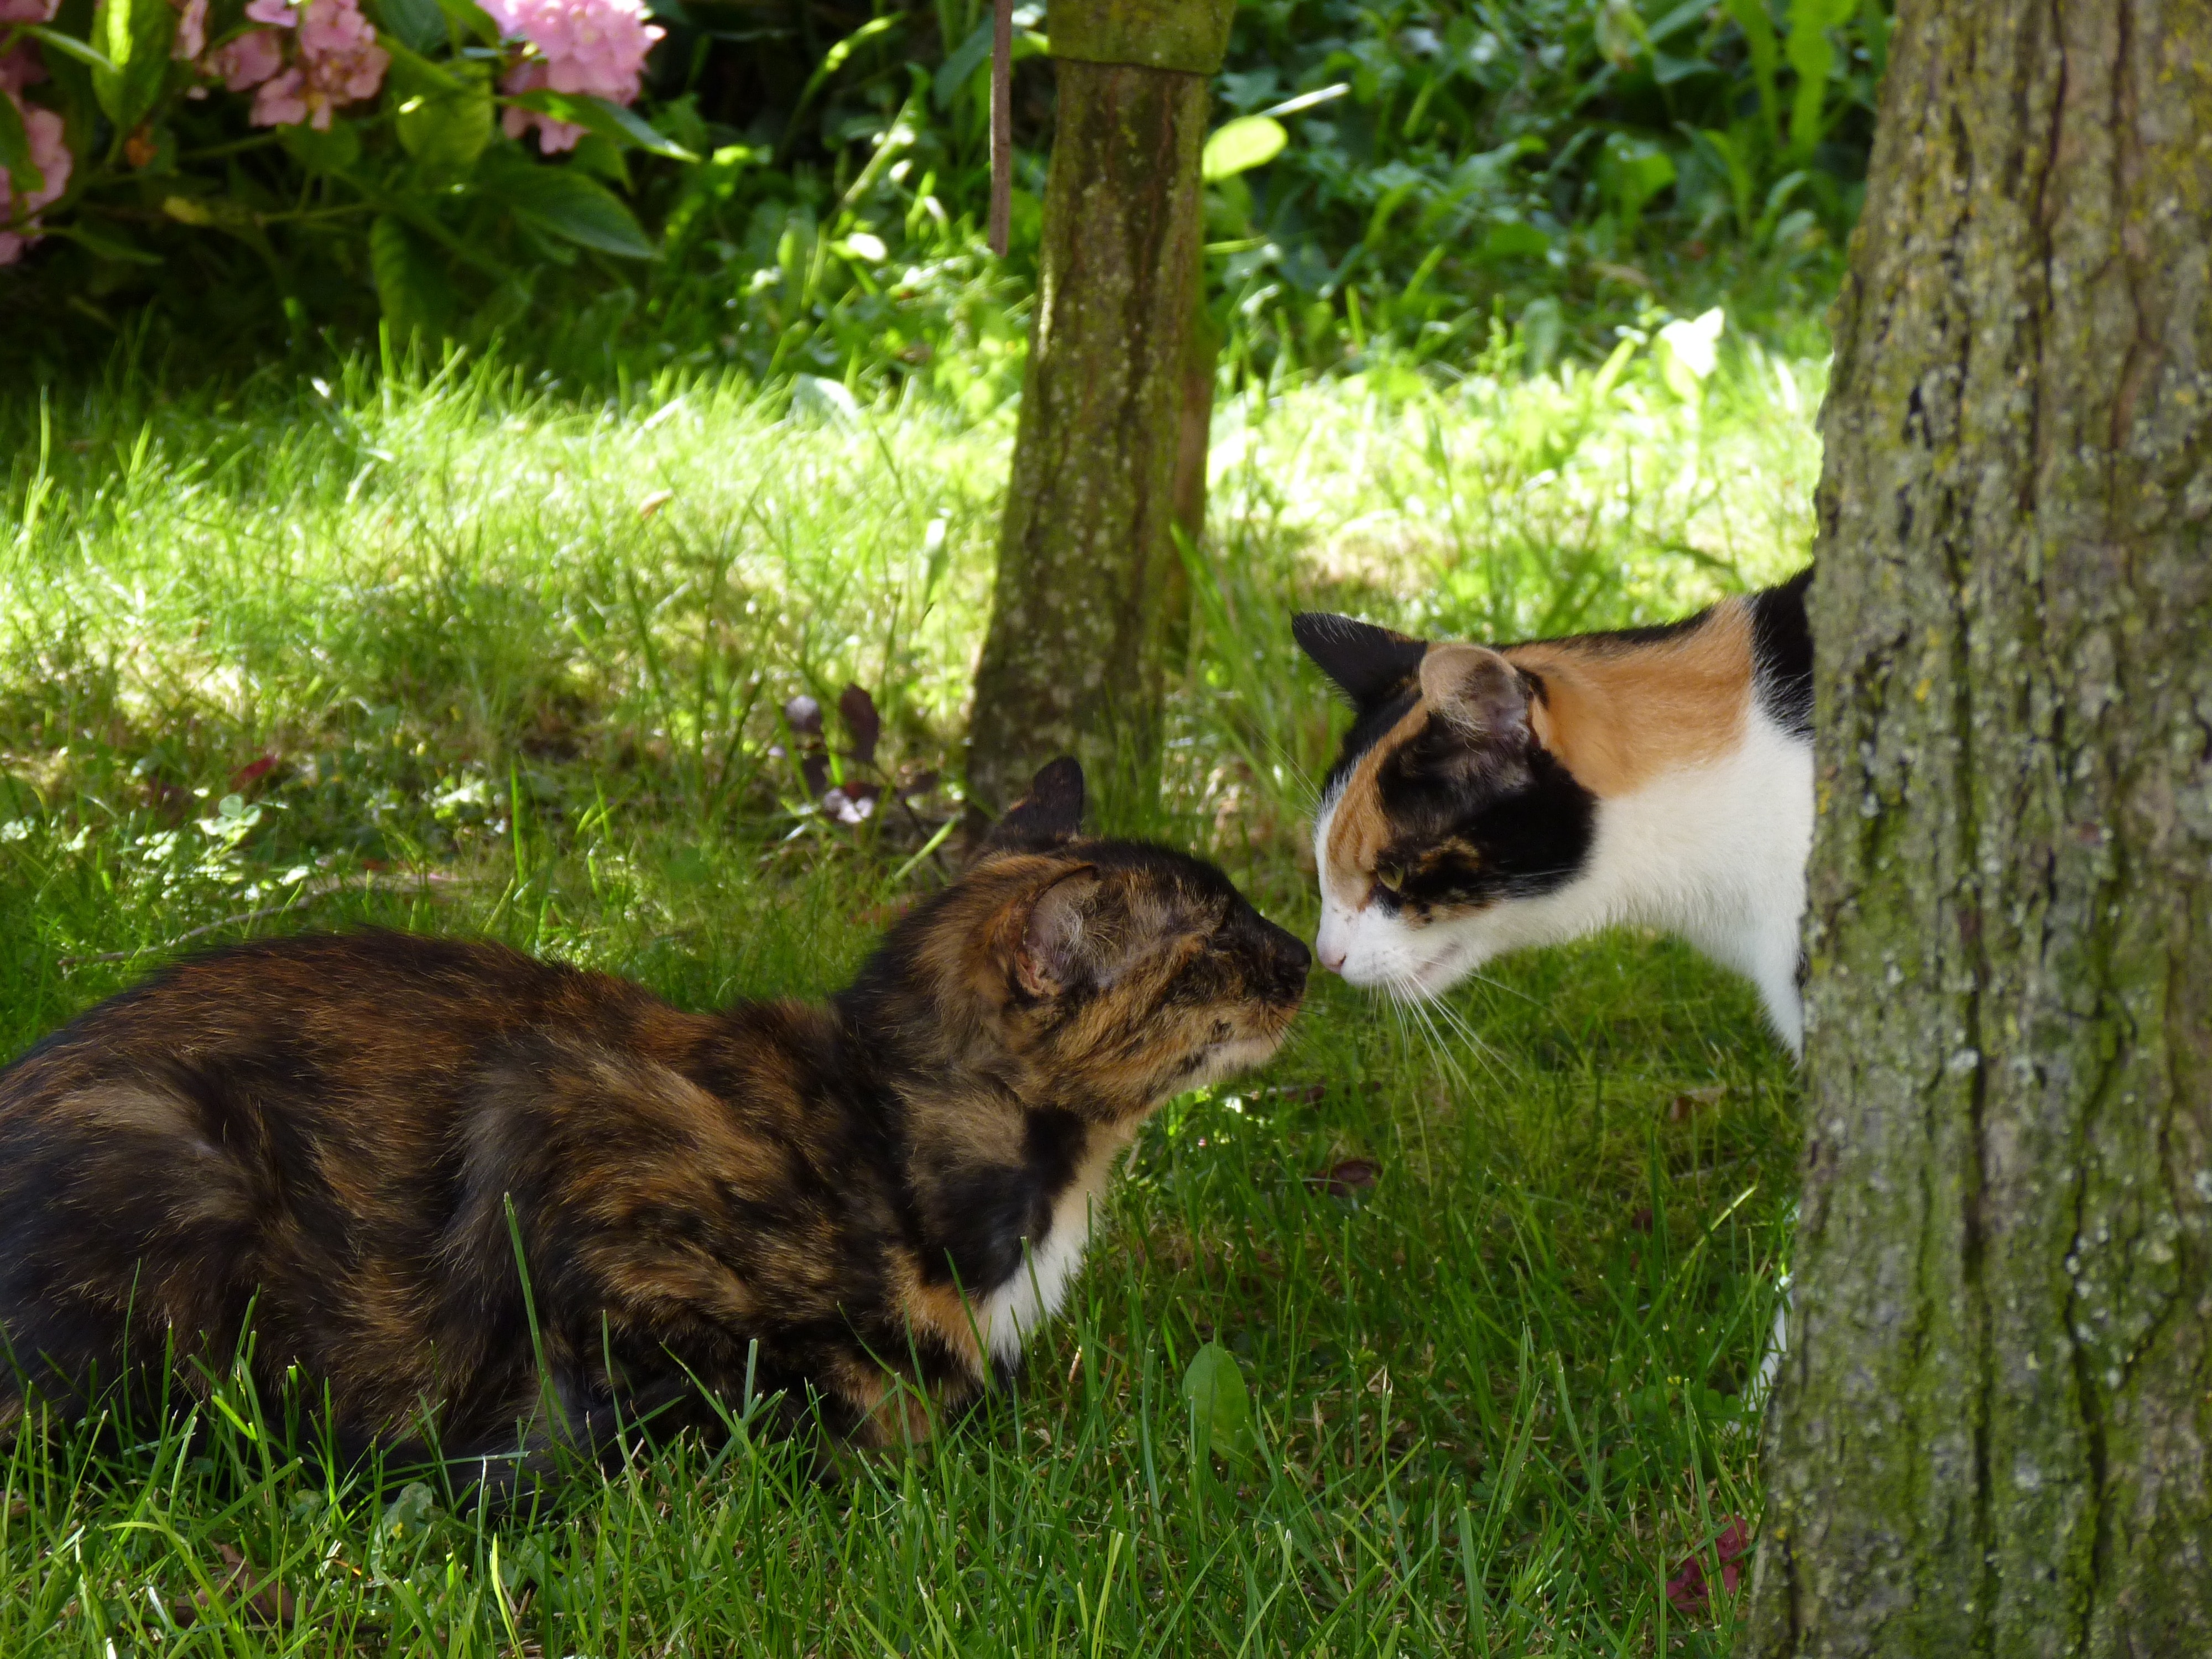 1 tortoiseshell cat and 1 calico cat